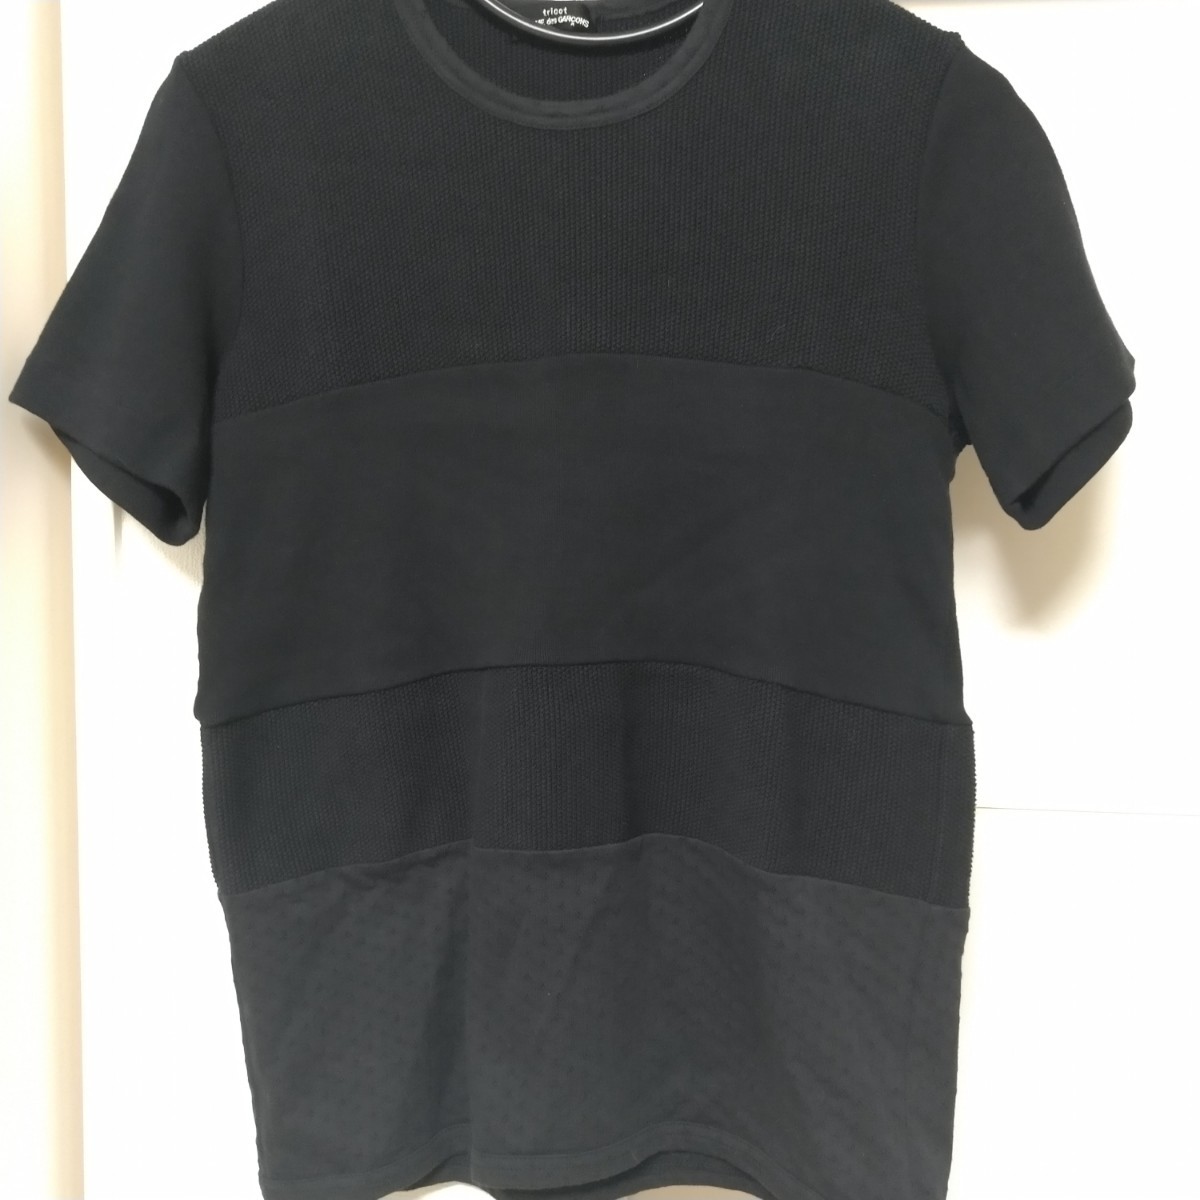  бесплатная доставка tricot COMME des GARCONS Toriko Comme des Garcons термический вафля переключатель короткий рукав футболка AD 1998 98 чёрный черный 